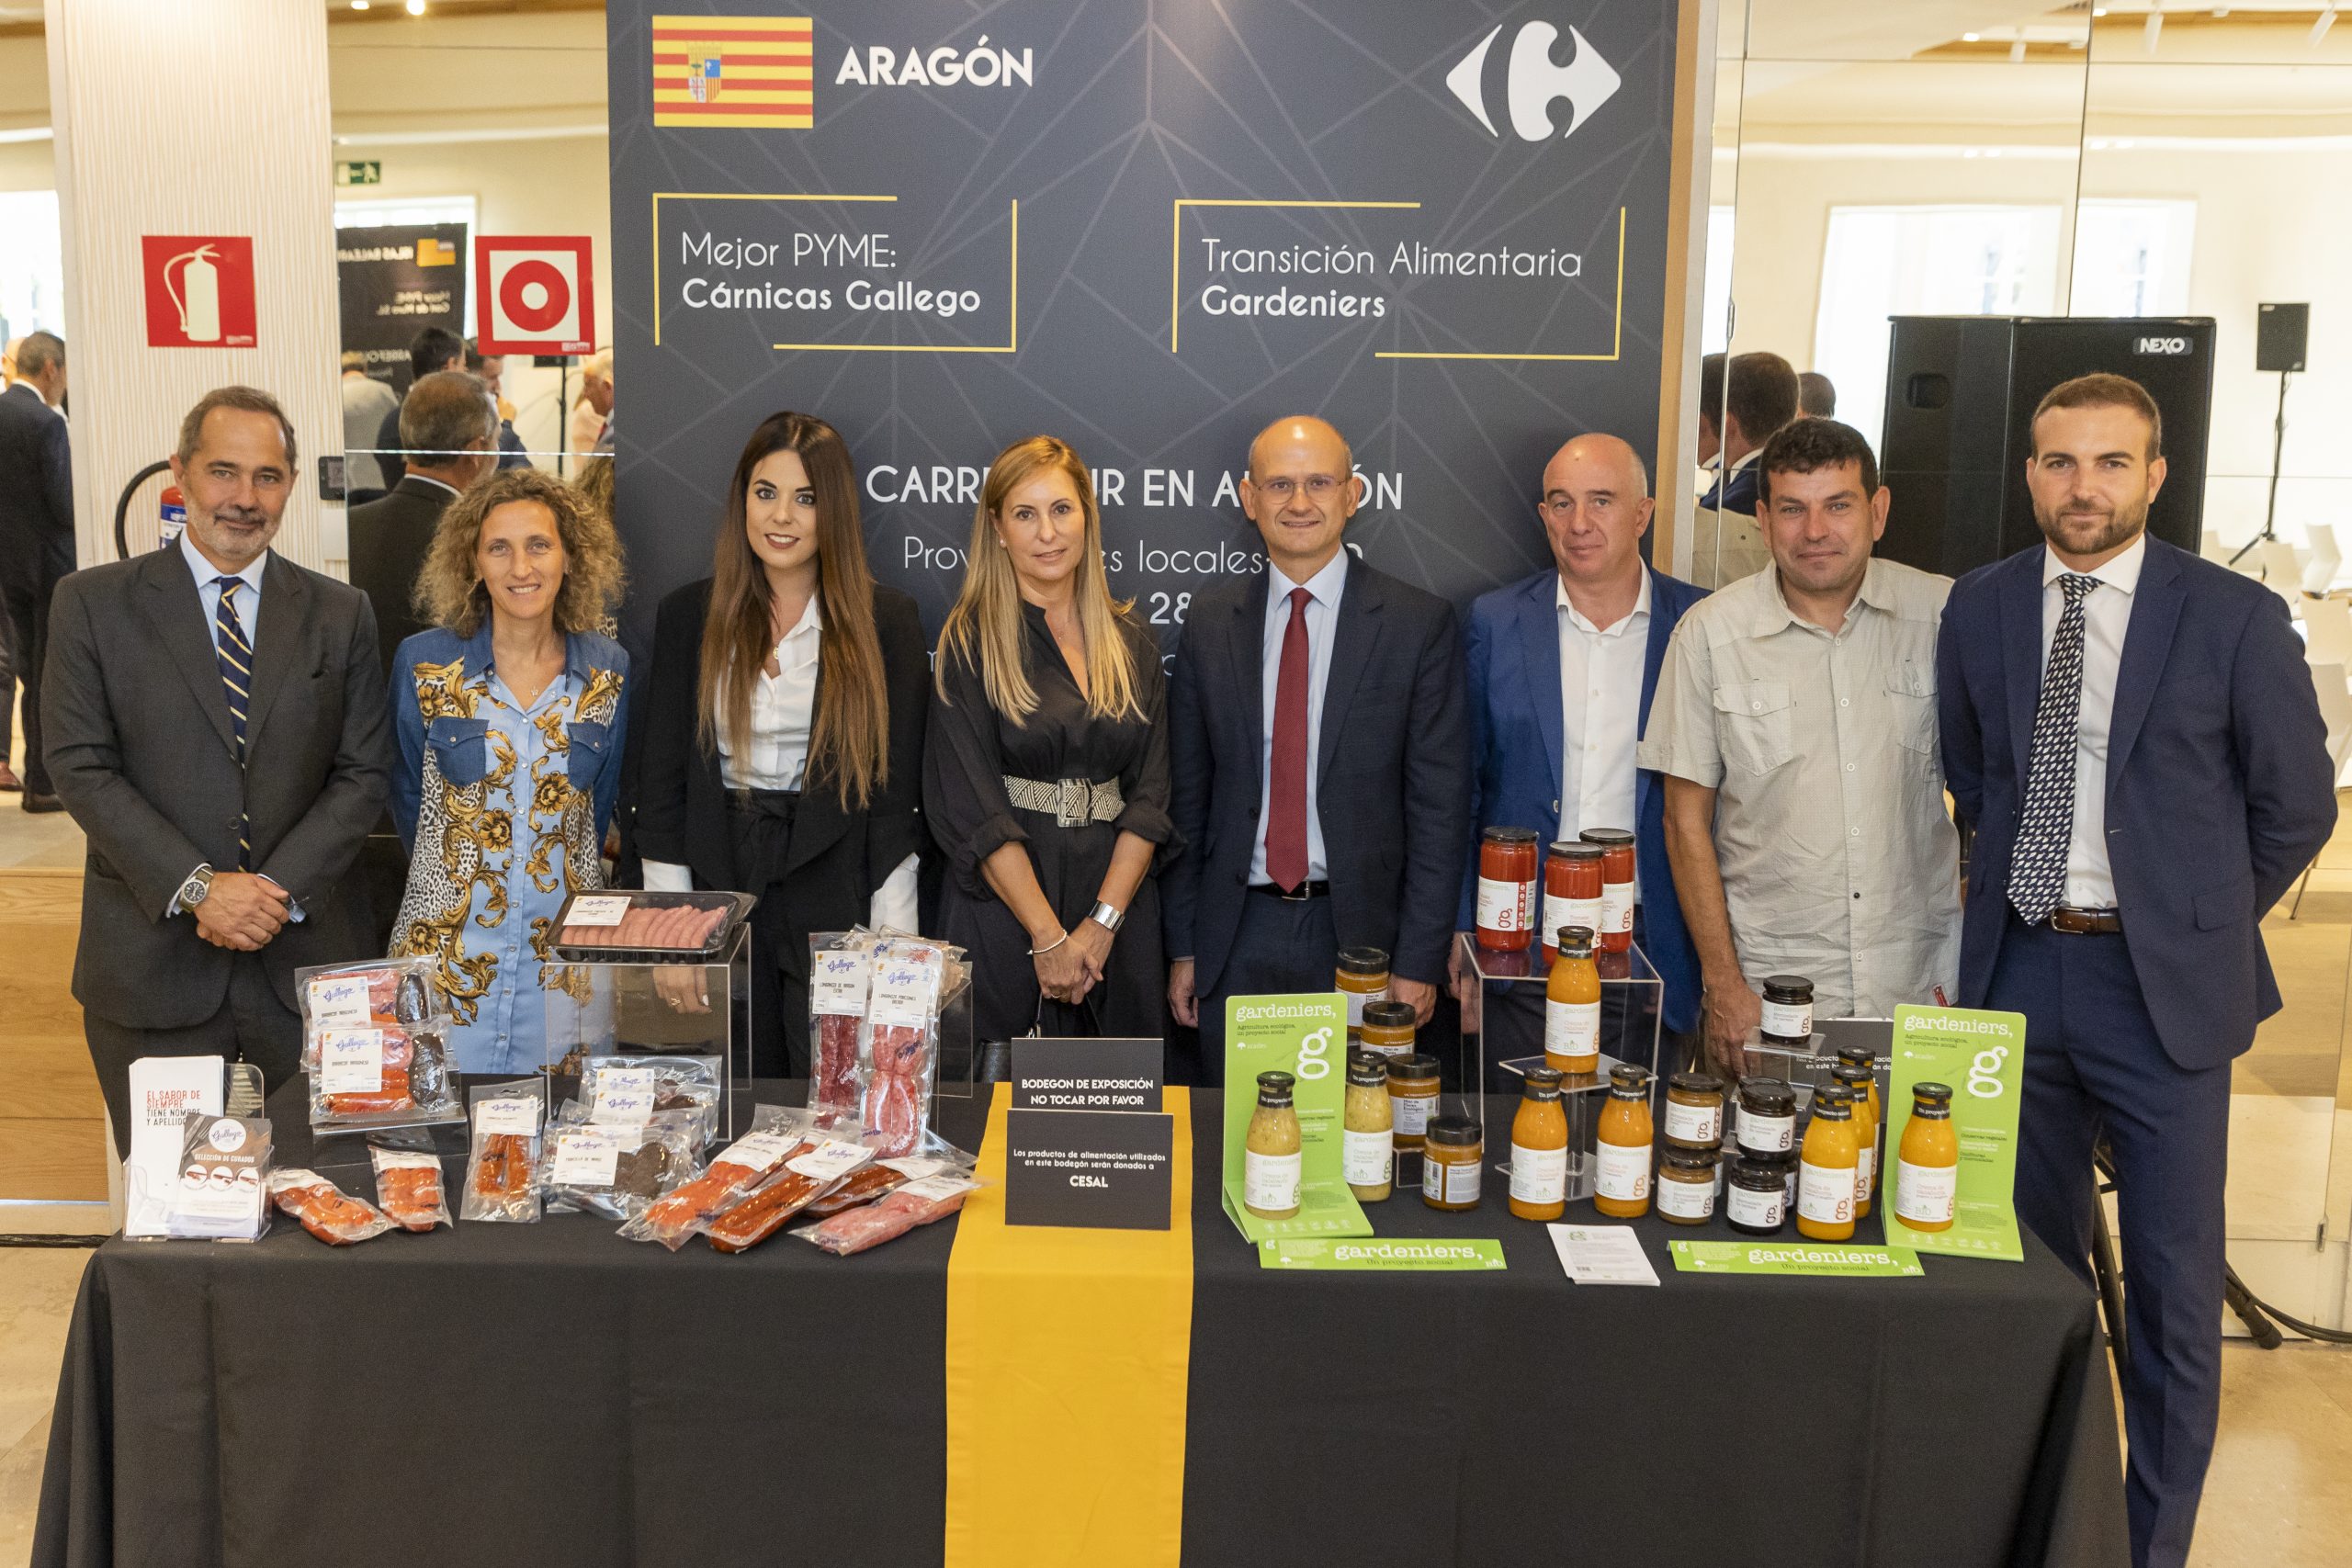 Premiados pymes Aragón Cárnicas Gallego y Gardeniers